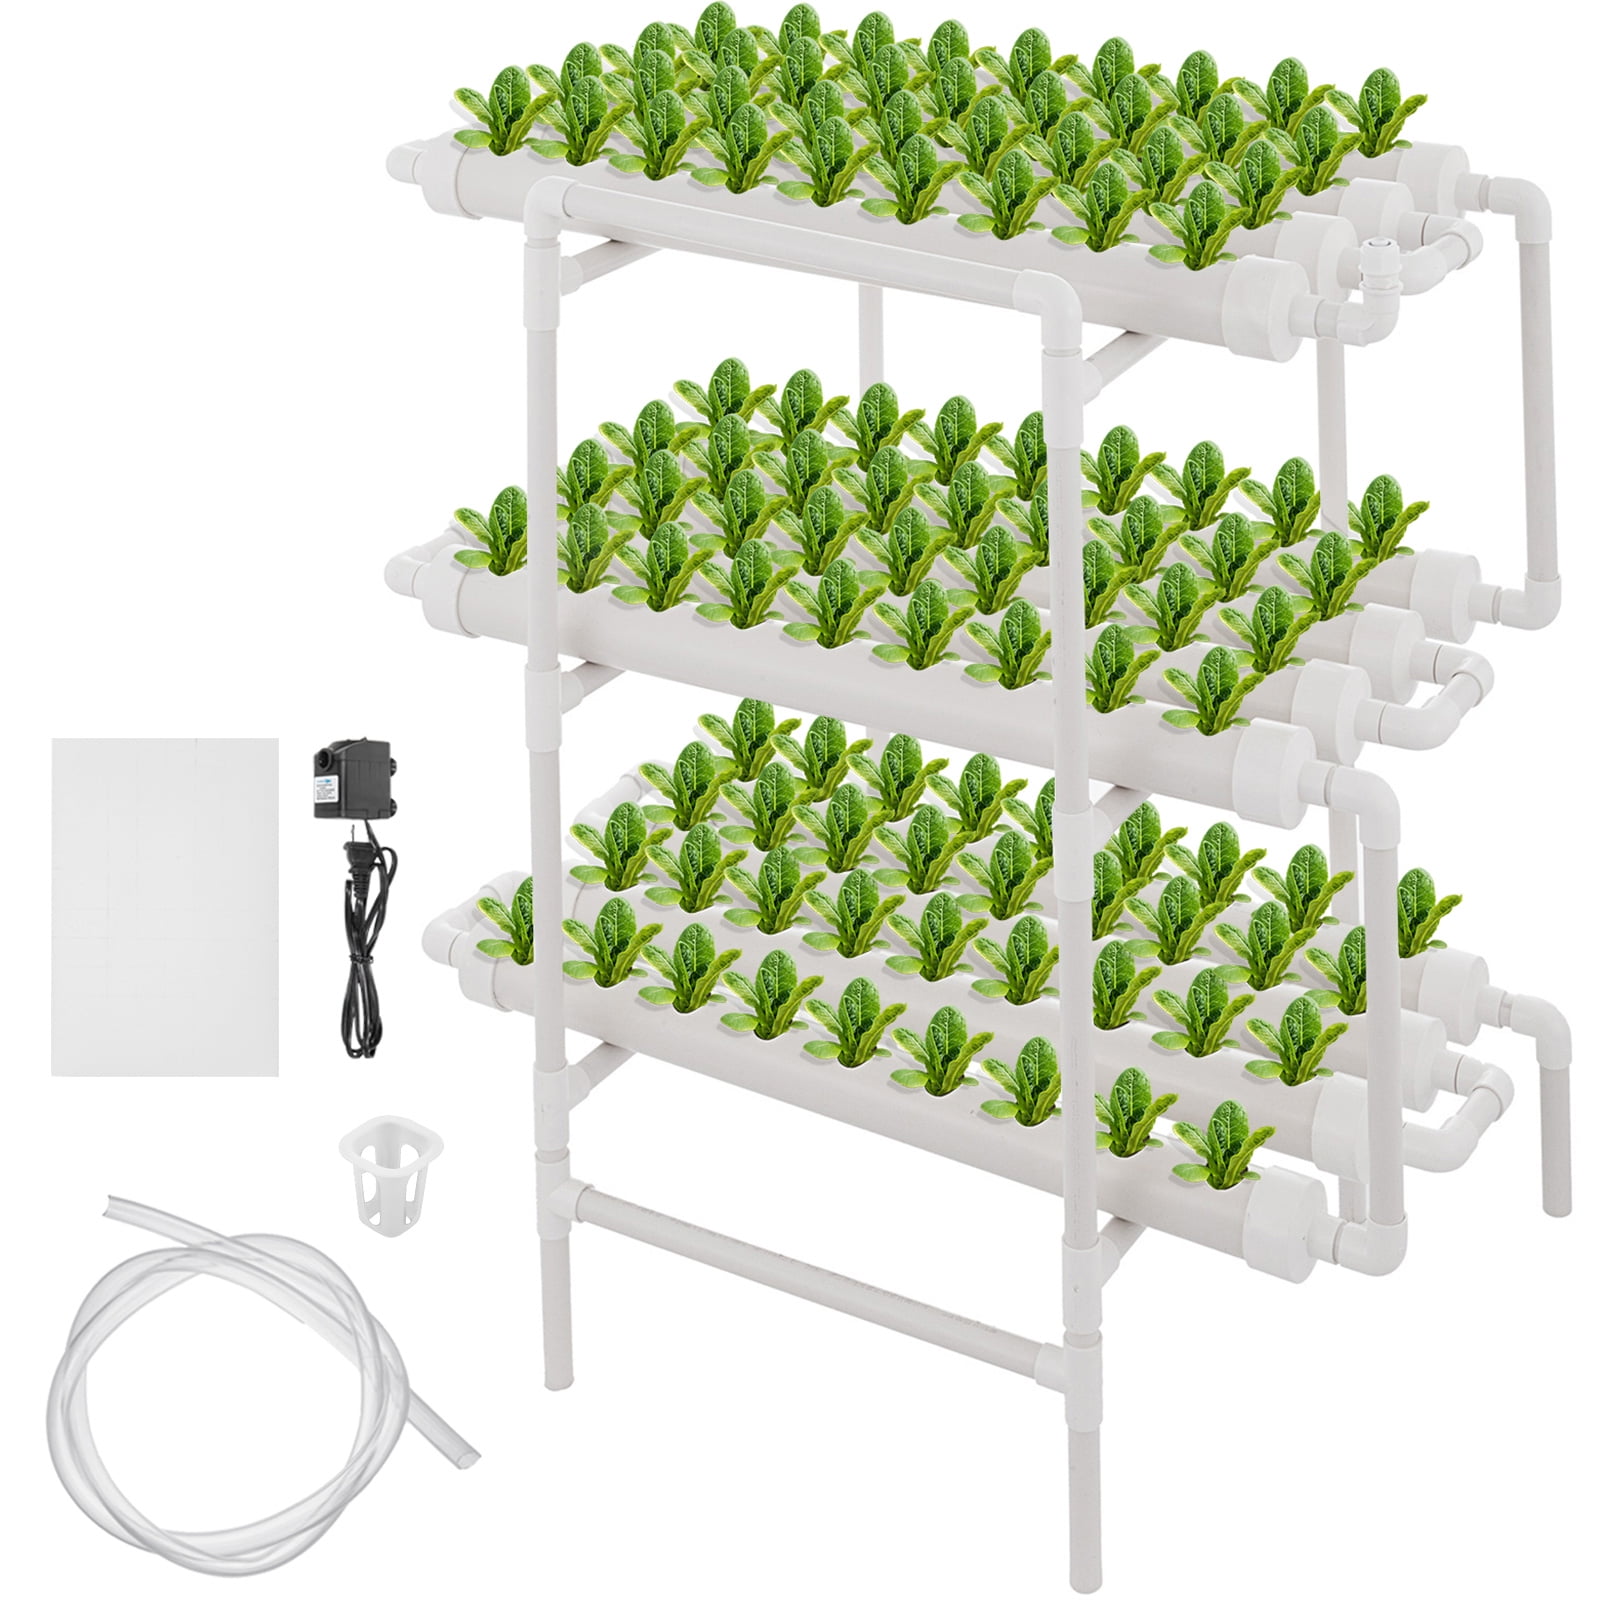 Hydroponic Grow Kit Plant Vegetable Hydrokultur 3 Layers 108 Plant Sites Garten 